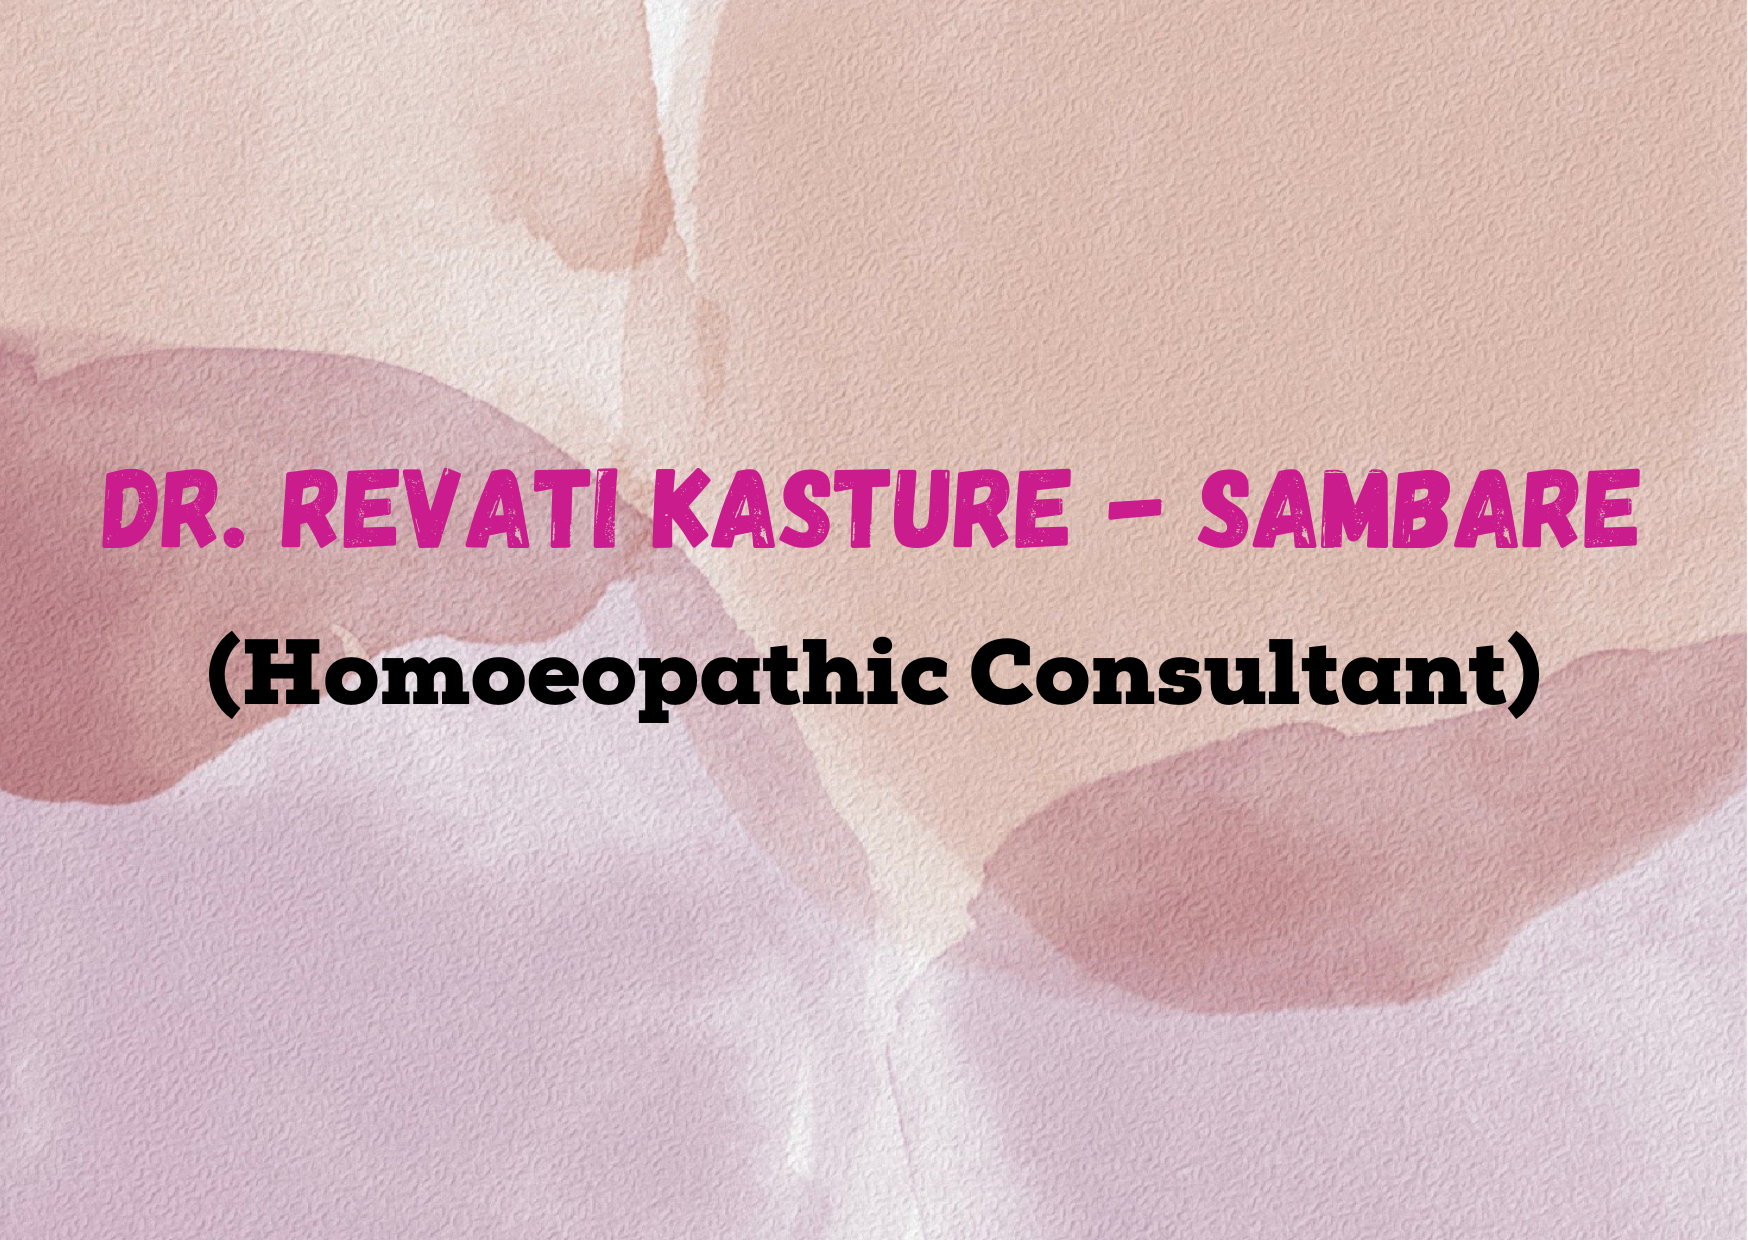 DR. REVATI KASTURE - SAMBARE 